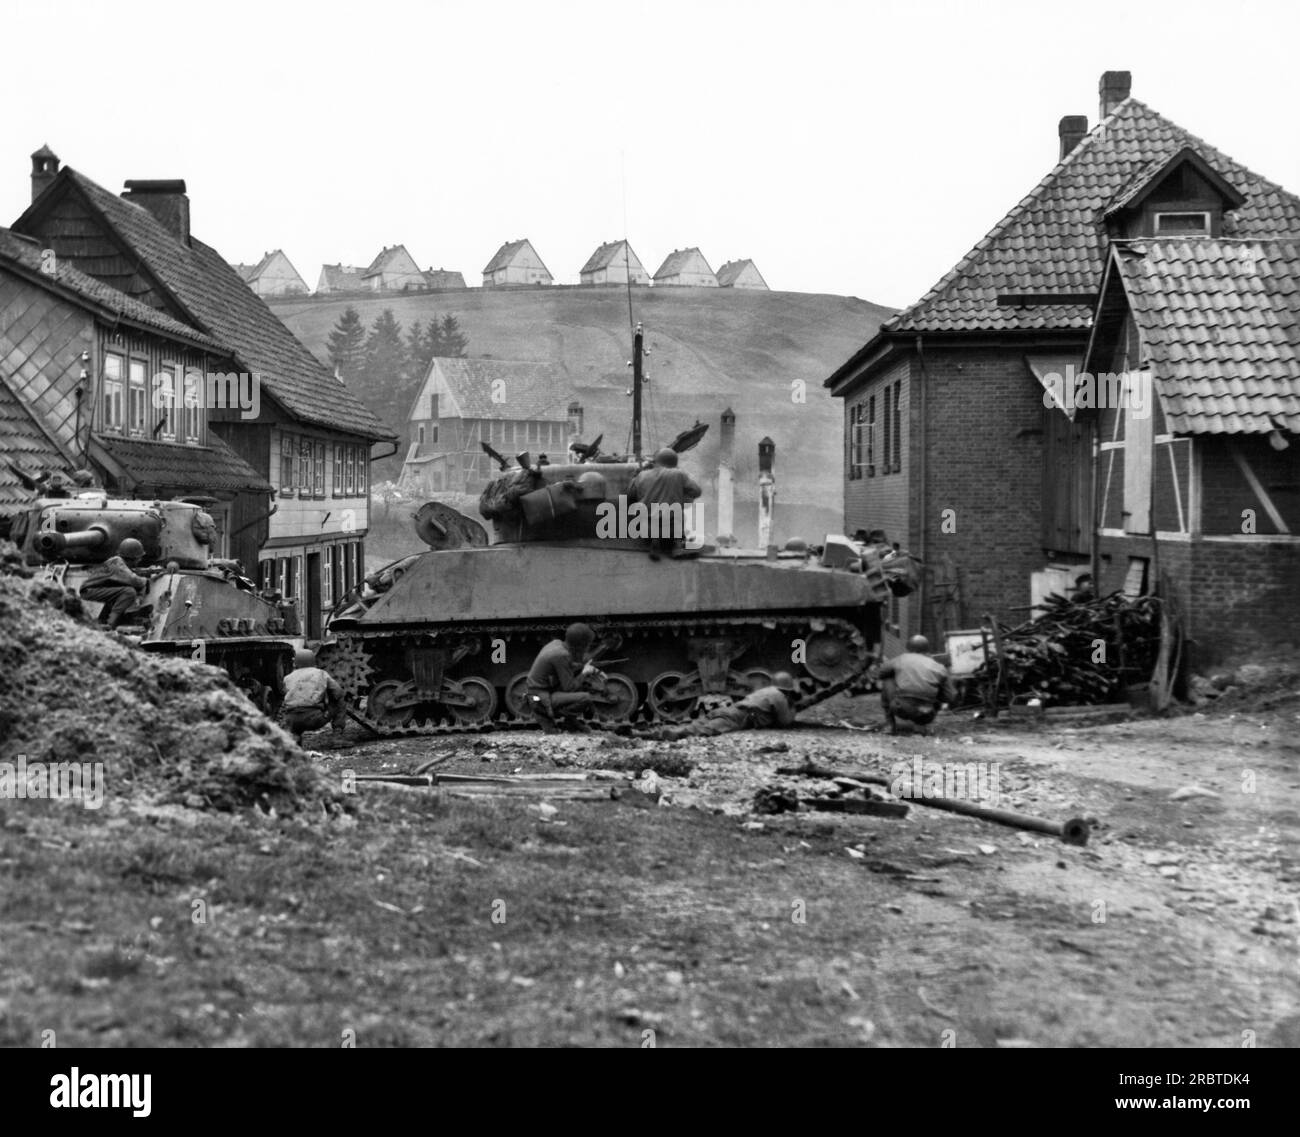 Sankt Andreasberg, Allemagne, le 14 avril 1945 Un char américain balançait de l'autre côté de la rue et offrait une couverture aux fantassins de la 1e division d'infanterie Première armée, alors qu'ils cherchent des tireurs d'élite dans les bâtiments. Banque D'Images